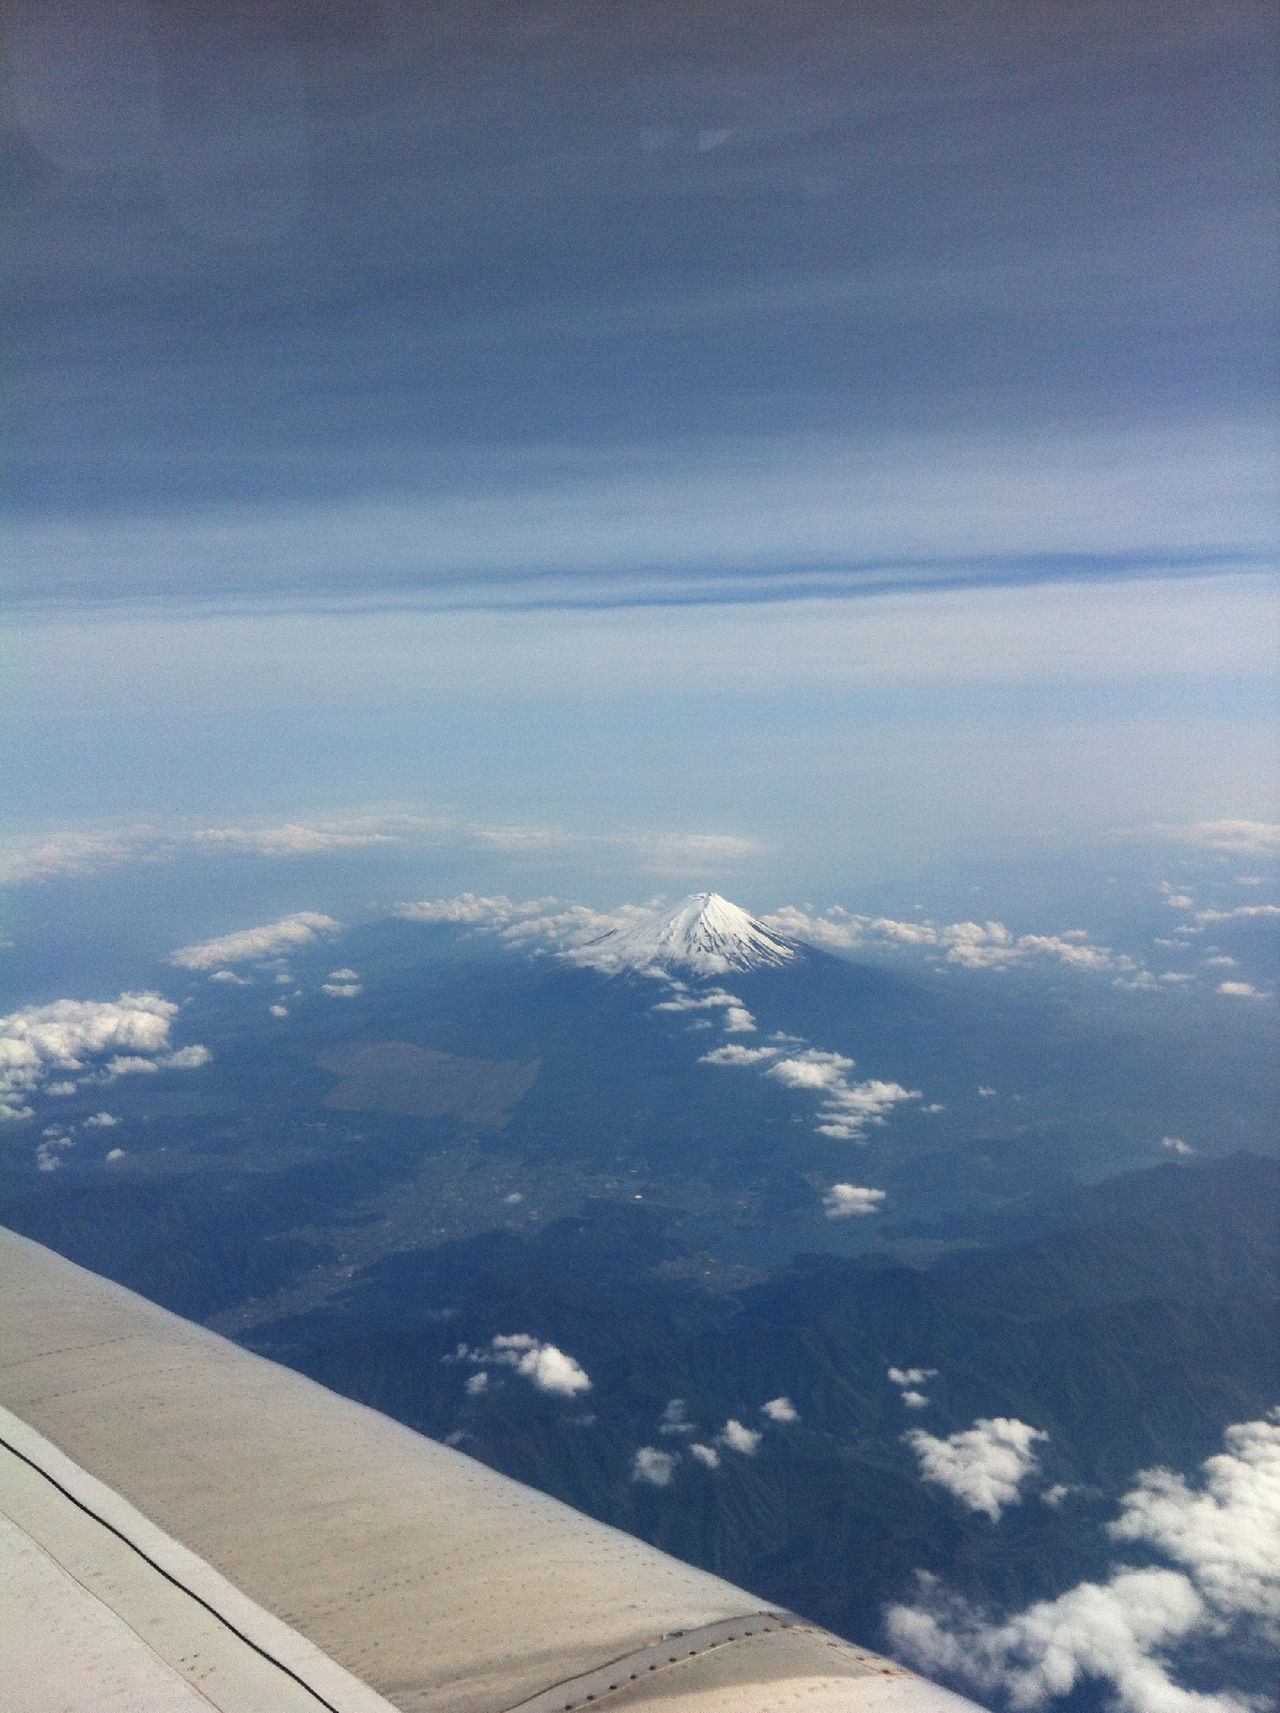 Mt. fuji